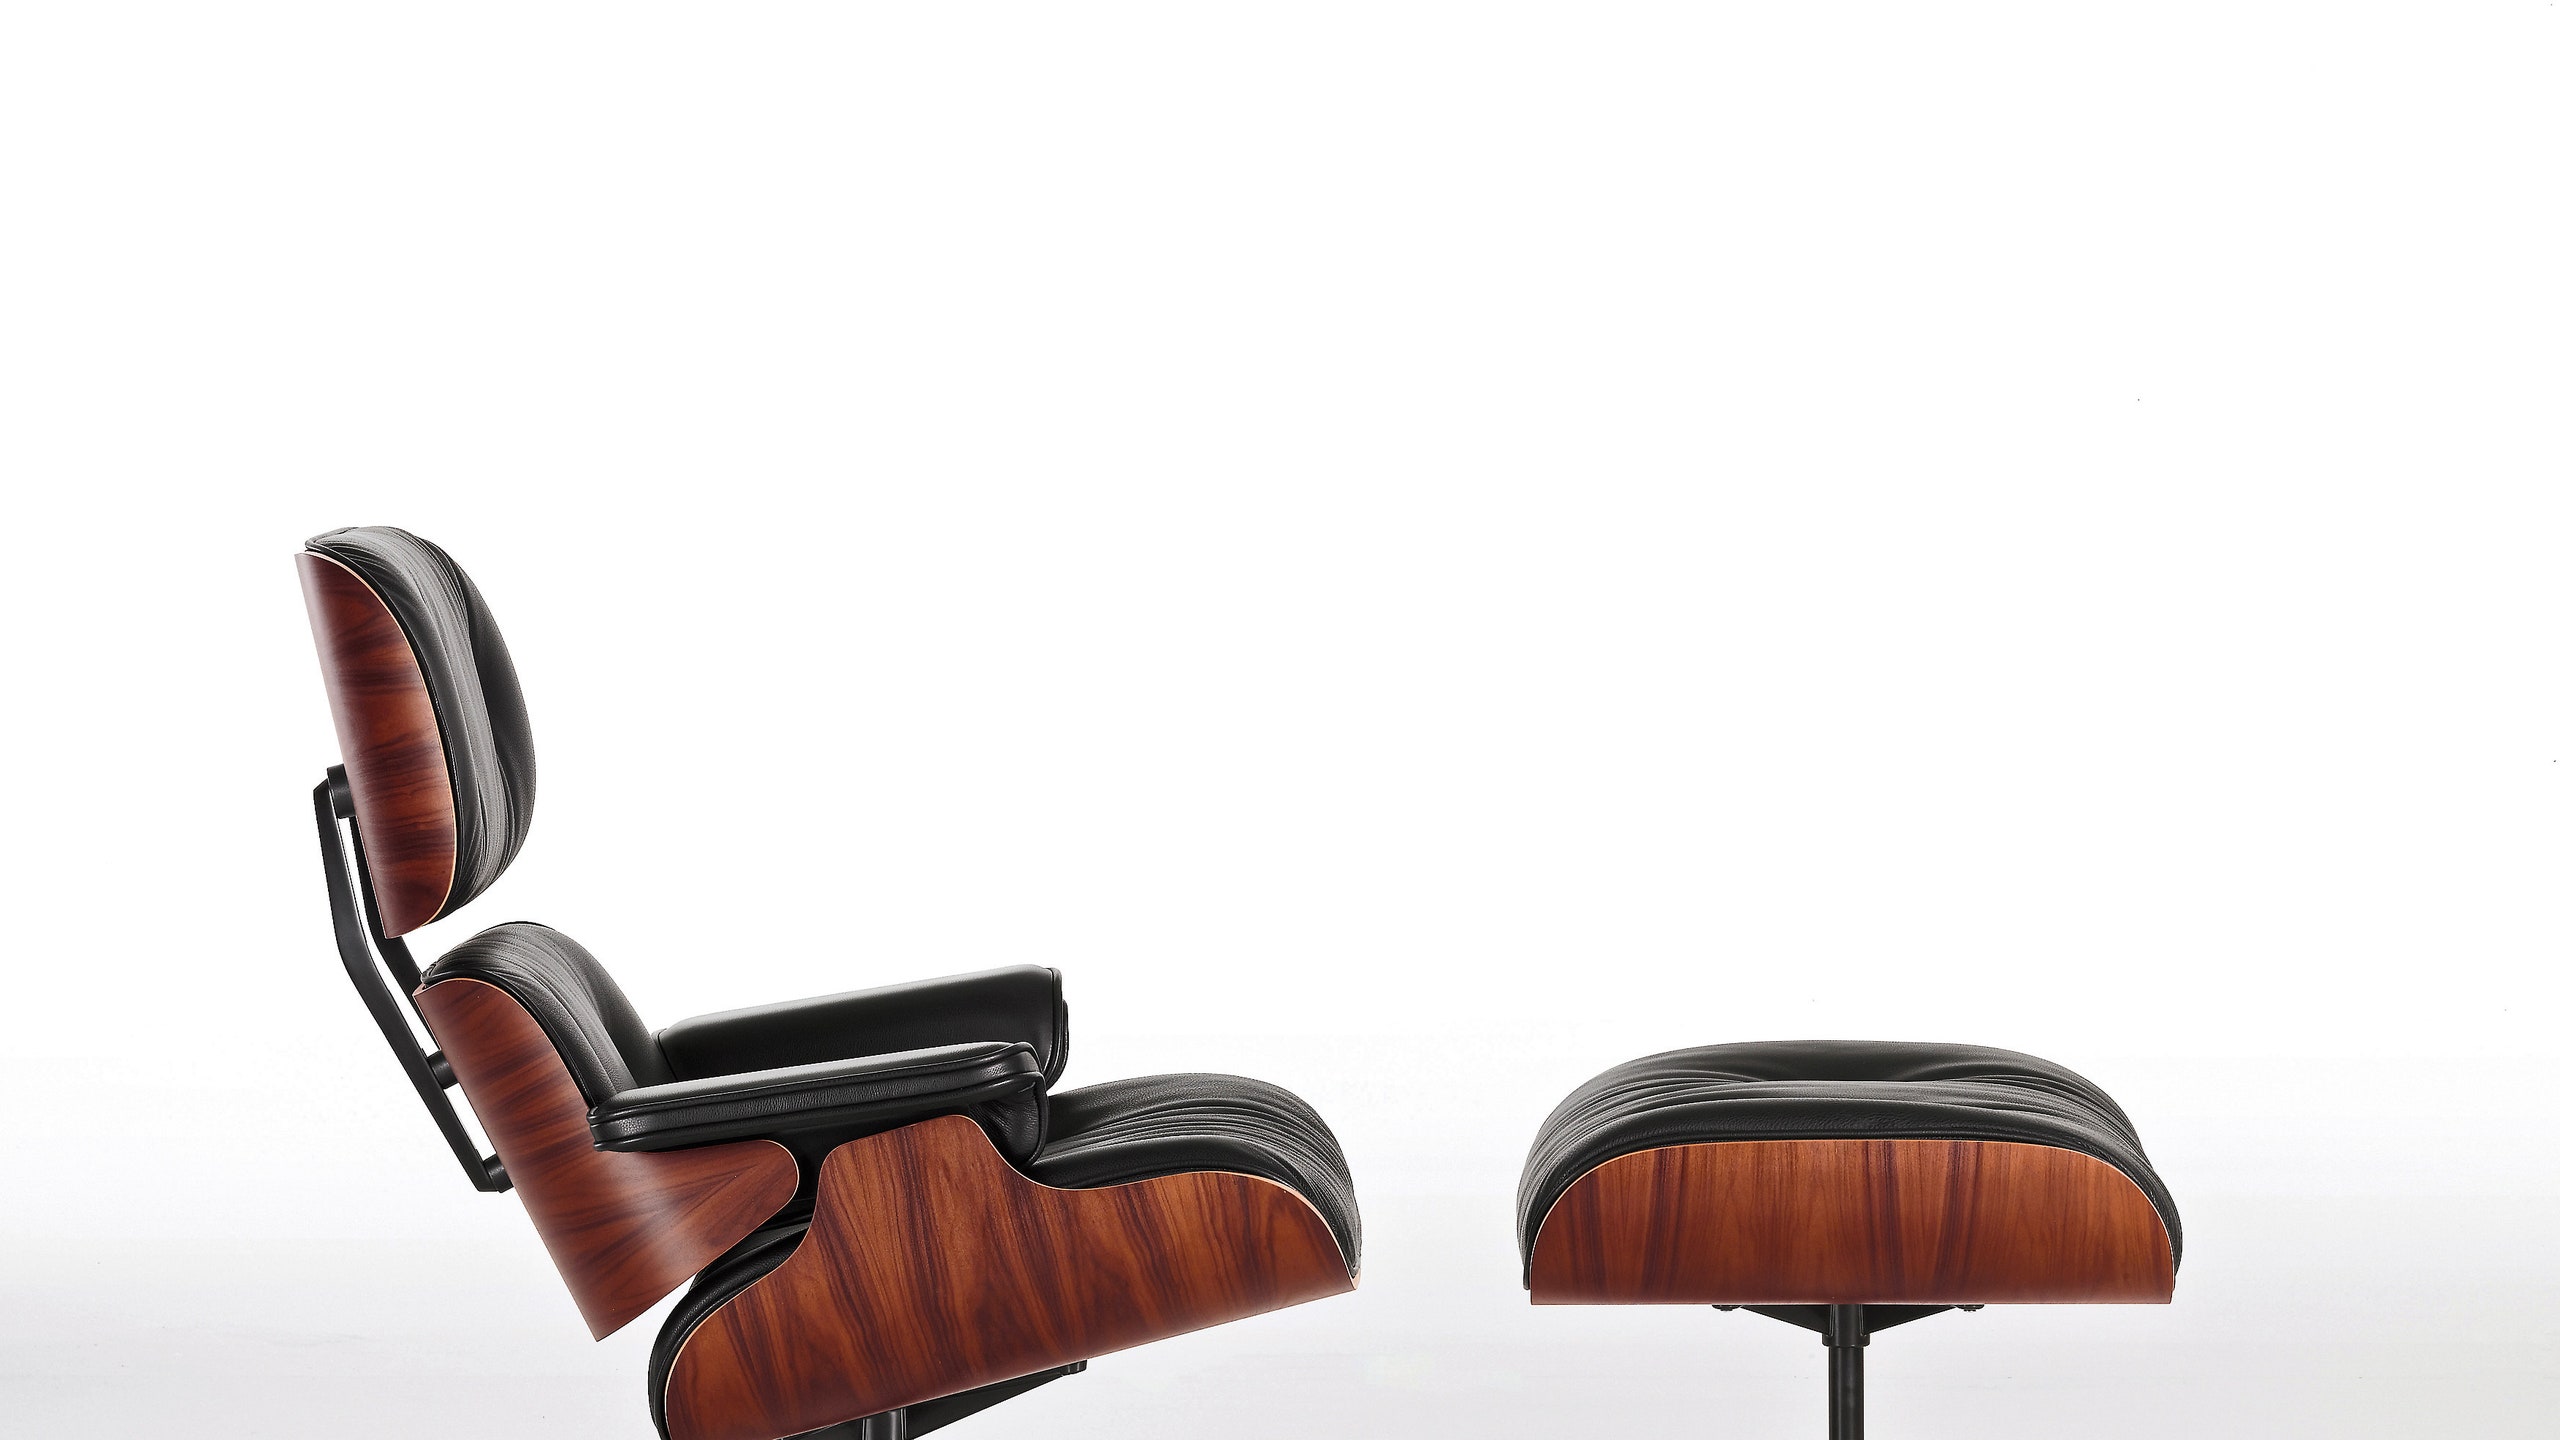 Кресло Eames Lounge and Ottoman интересные факты о культовом предмете мебели | Admagazine